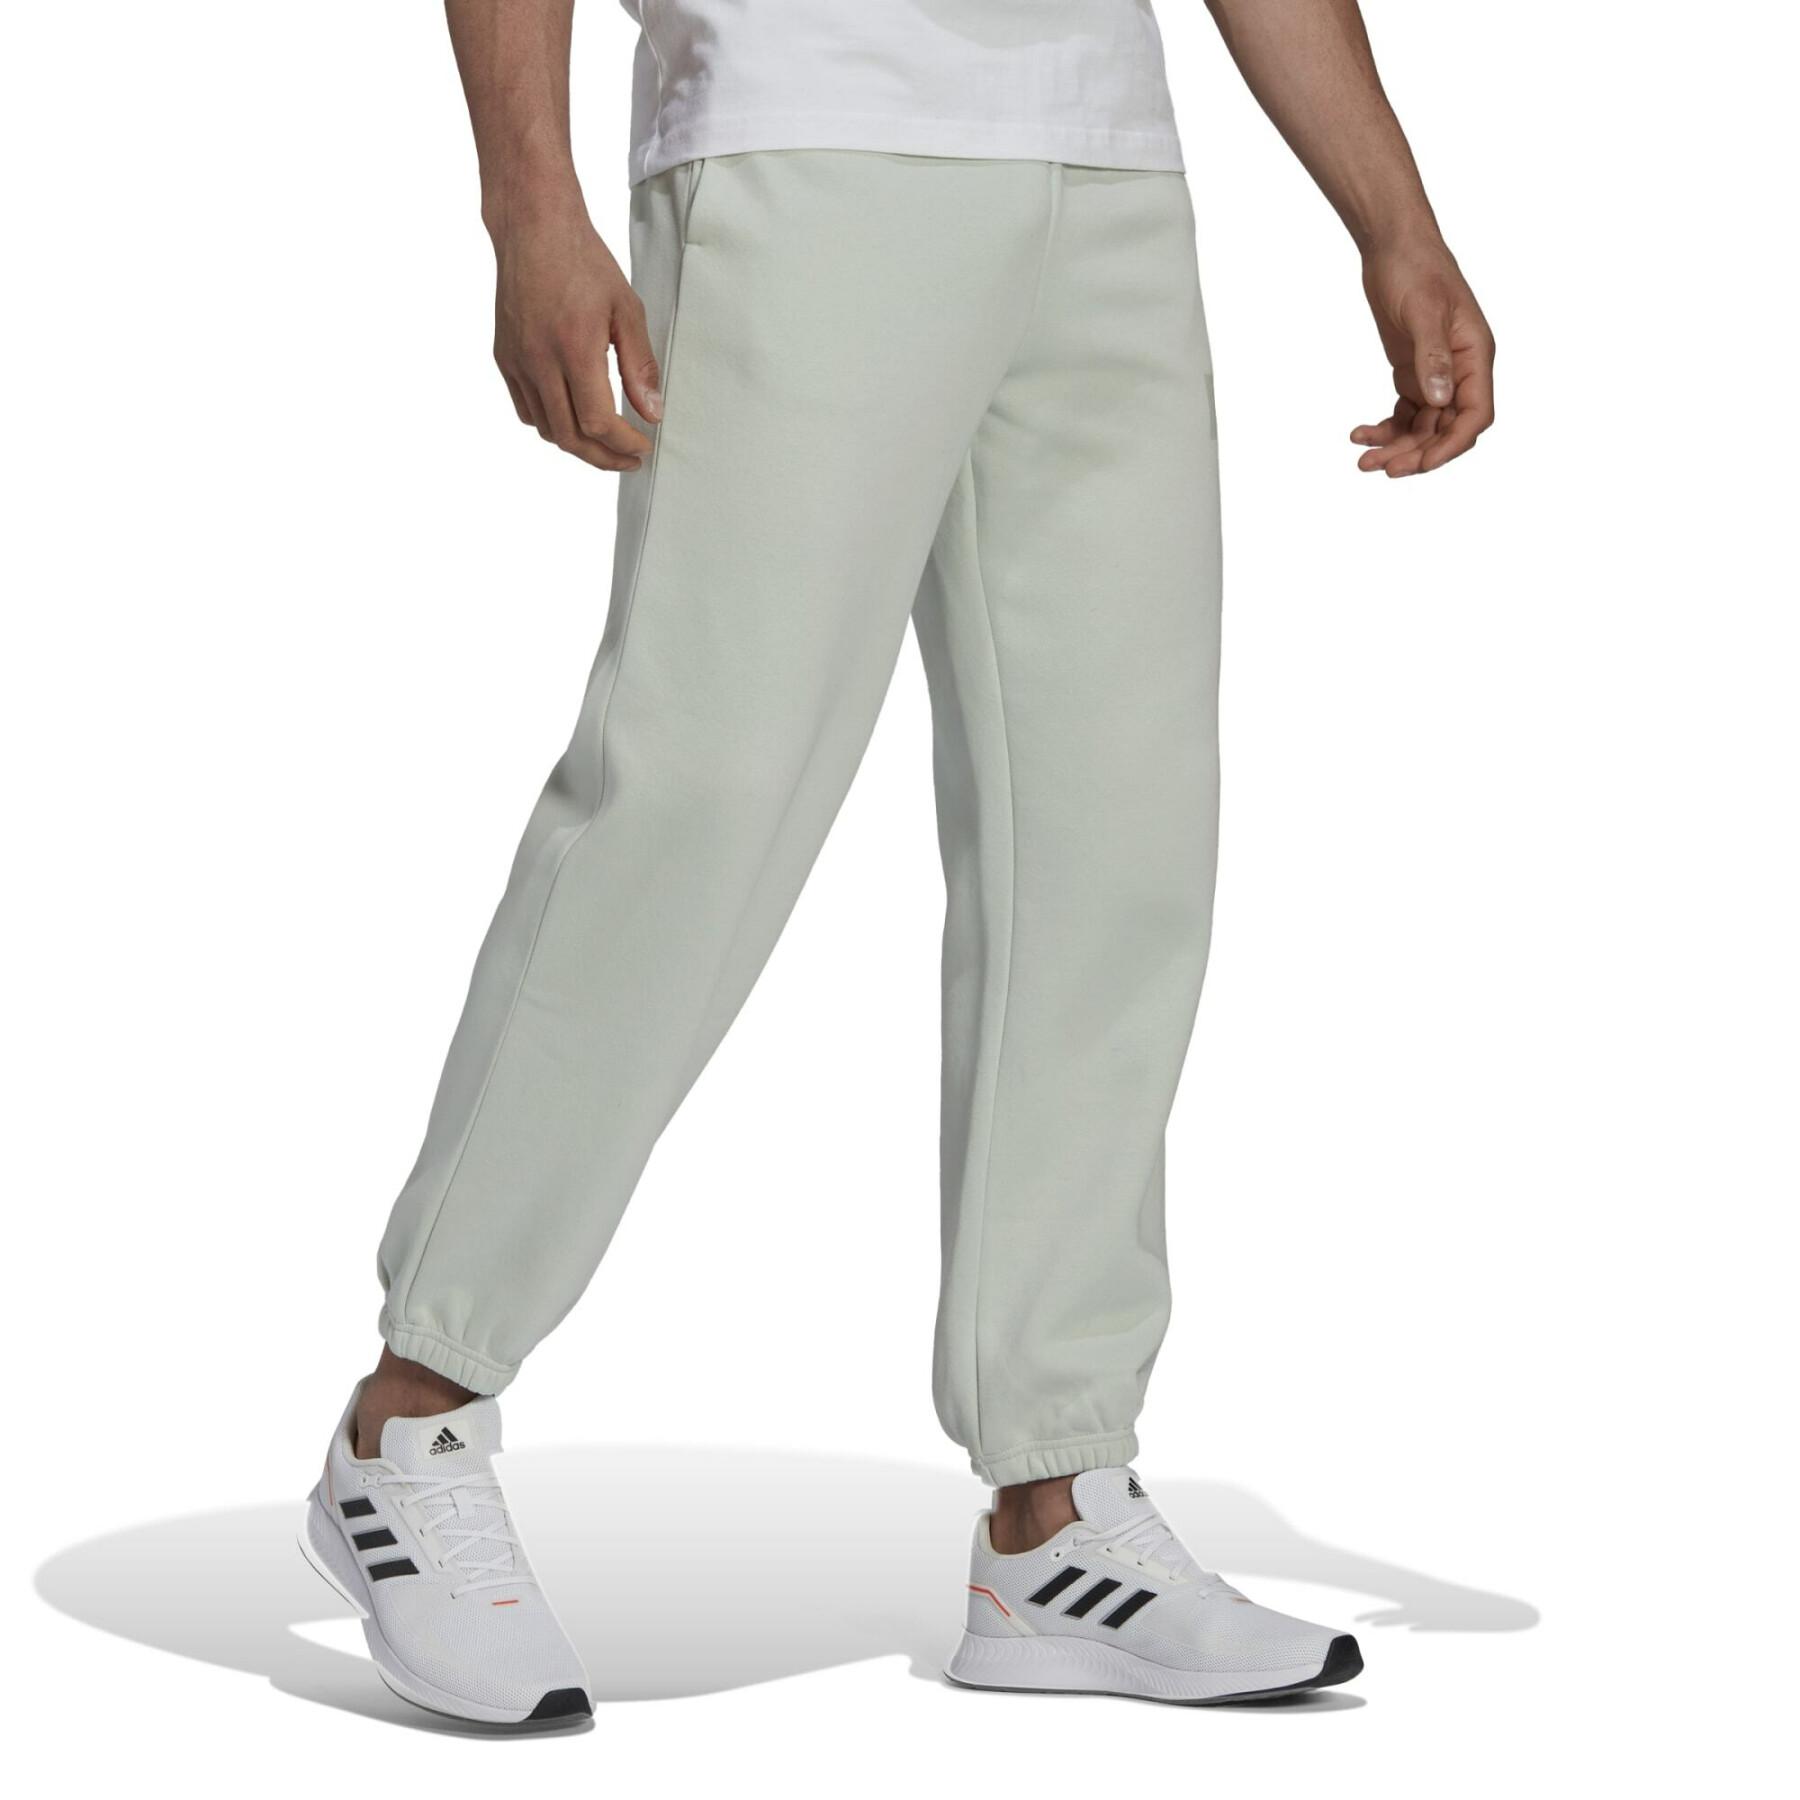 Cotton jogging suit adidas Essentials Colorblock